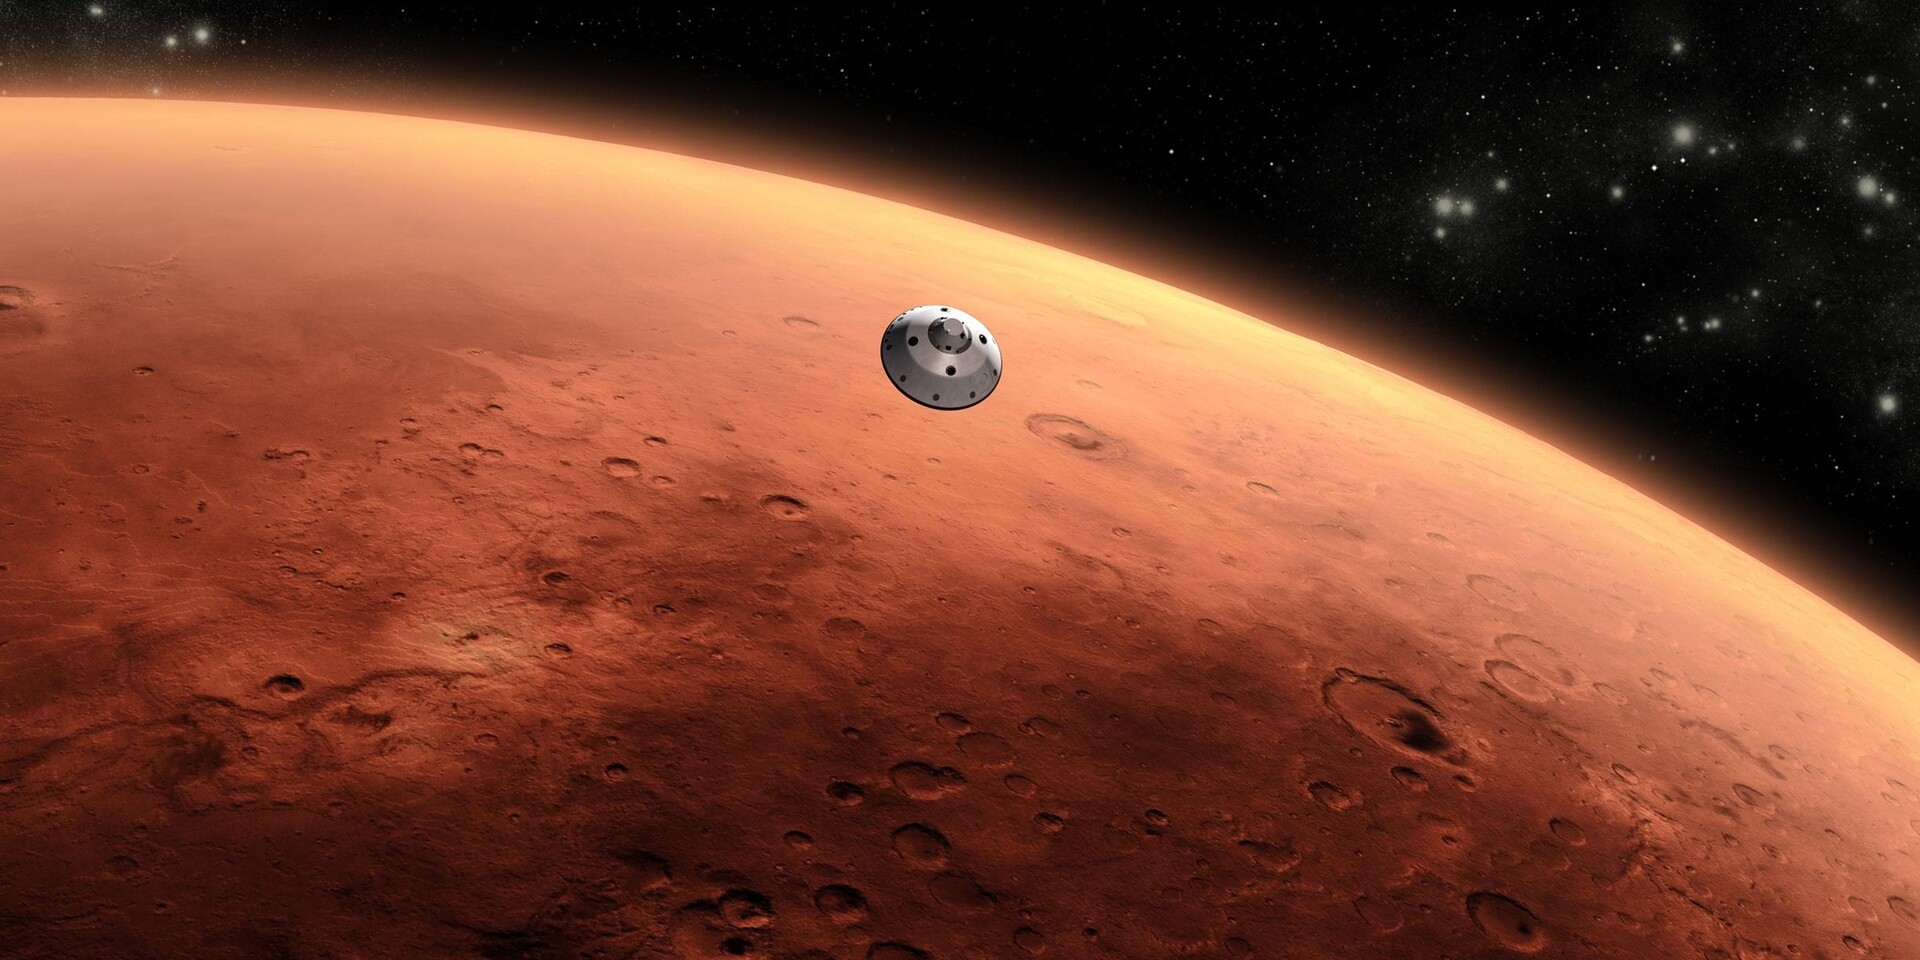 Πώς θα φτάσουμε στον πλανήτη Άρη; – Έλληνας γιατρός διαστημικής αποστολής αποκαλύπτει τον τρόπο